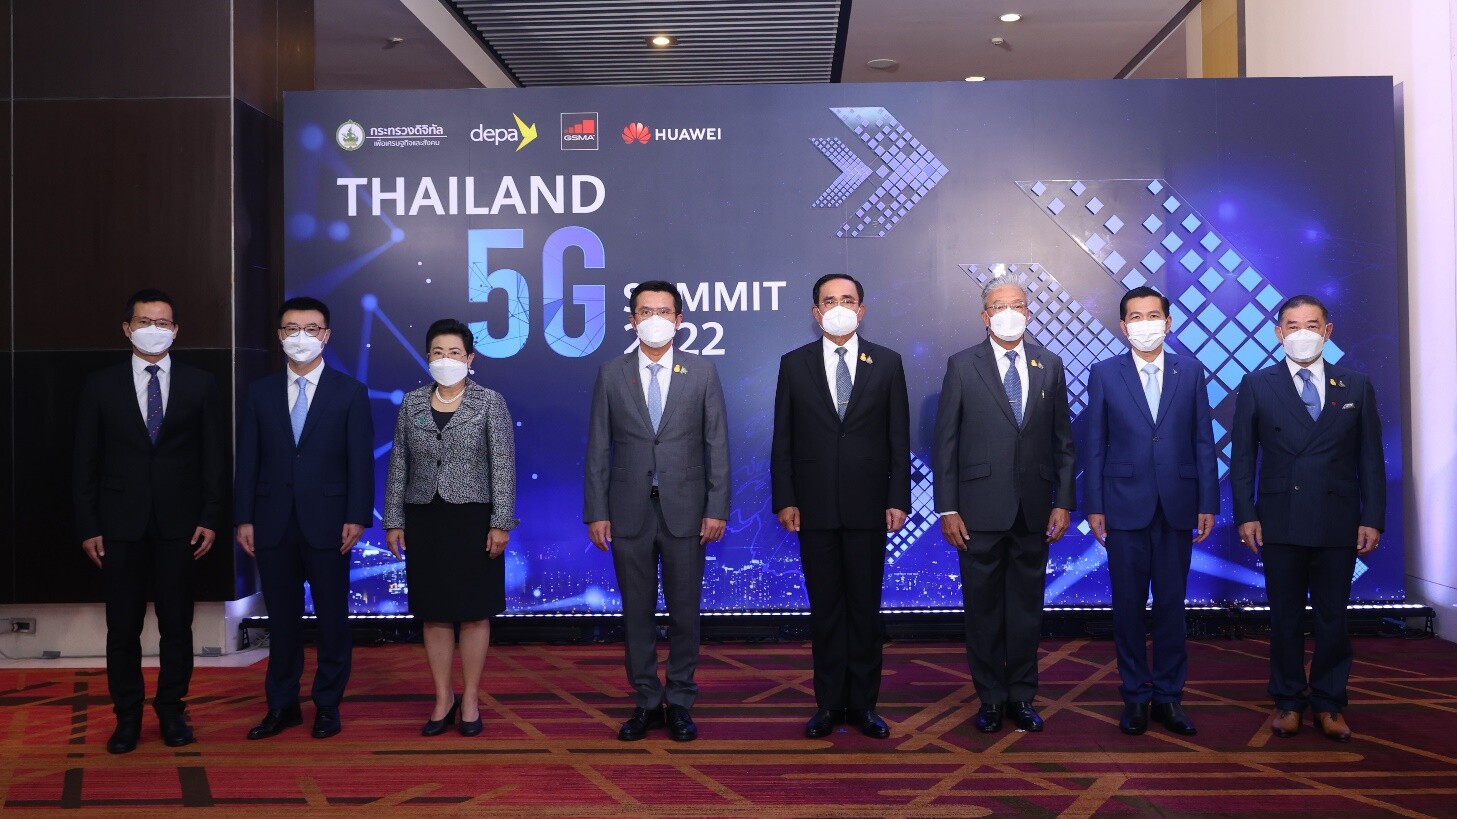 นายกฯ เปิดงาน Thailand 5G Summit 2022 สุดยิ่งใหญ่ ผนึกกำลังเครือข่ายพันธมิตร ทั้งในและต่างประเทศ ผลักดัน 5G สู่โครงสร้างพื้นฐานดิจิทัลสำคัญของไทย